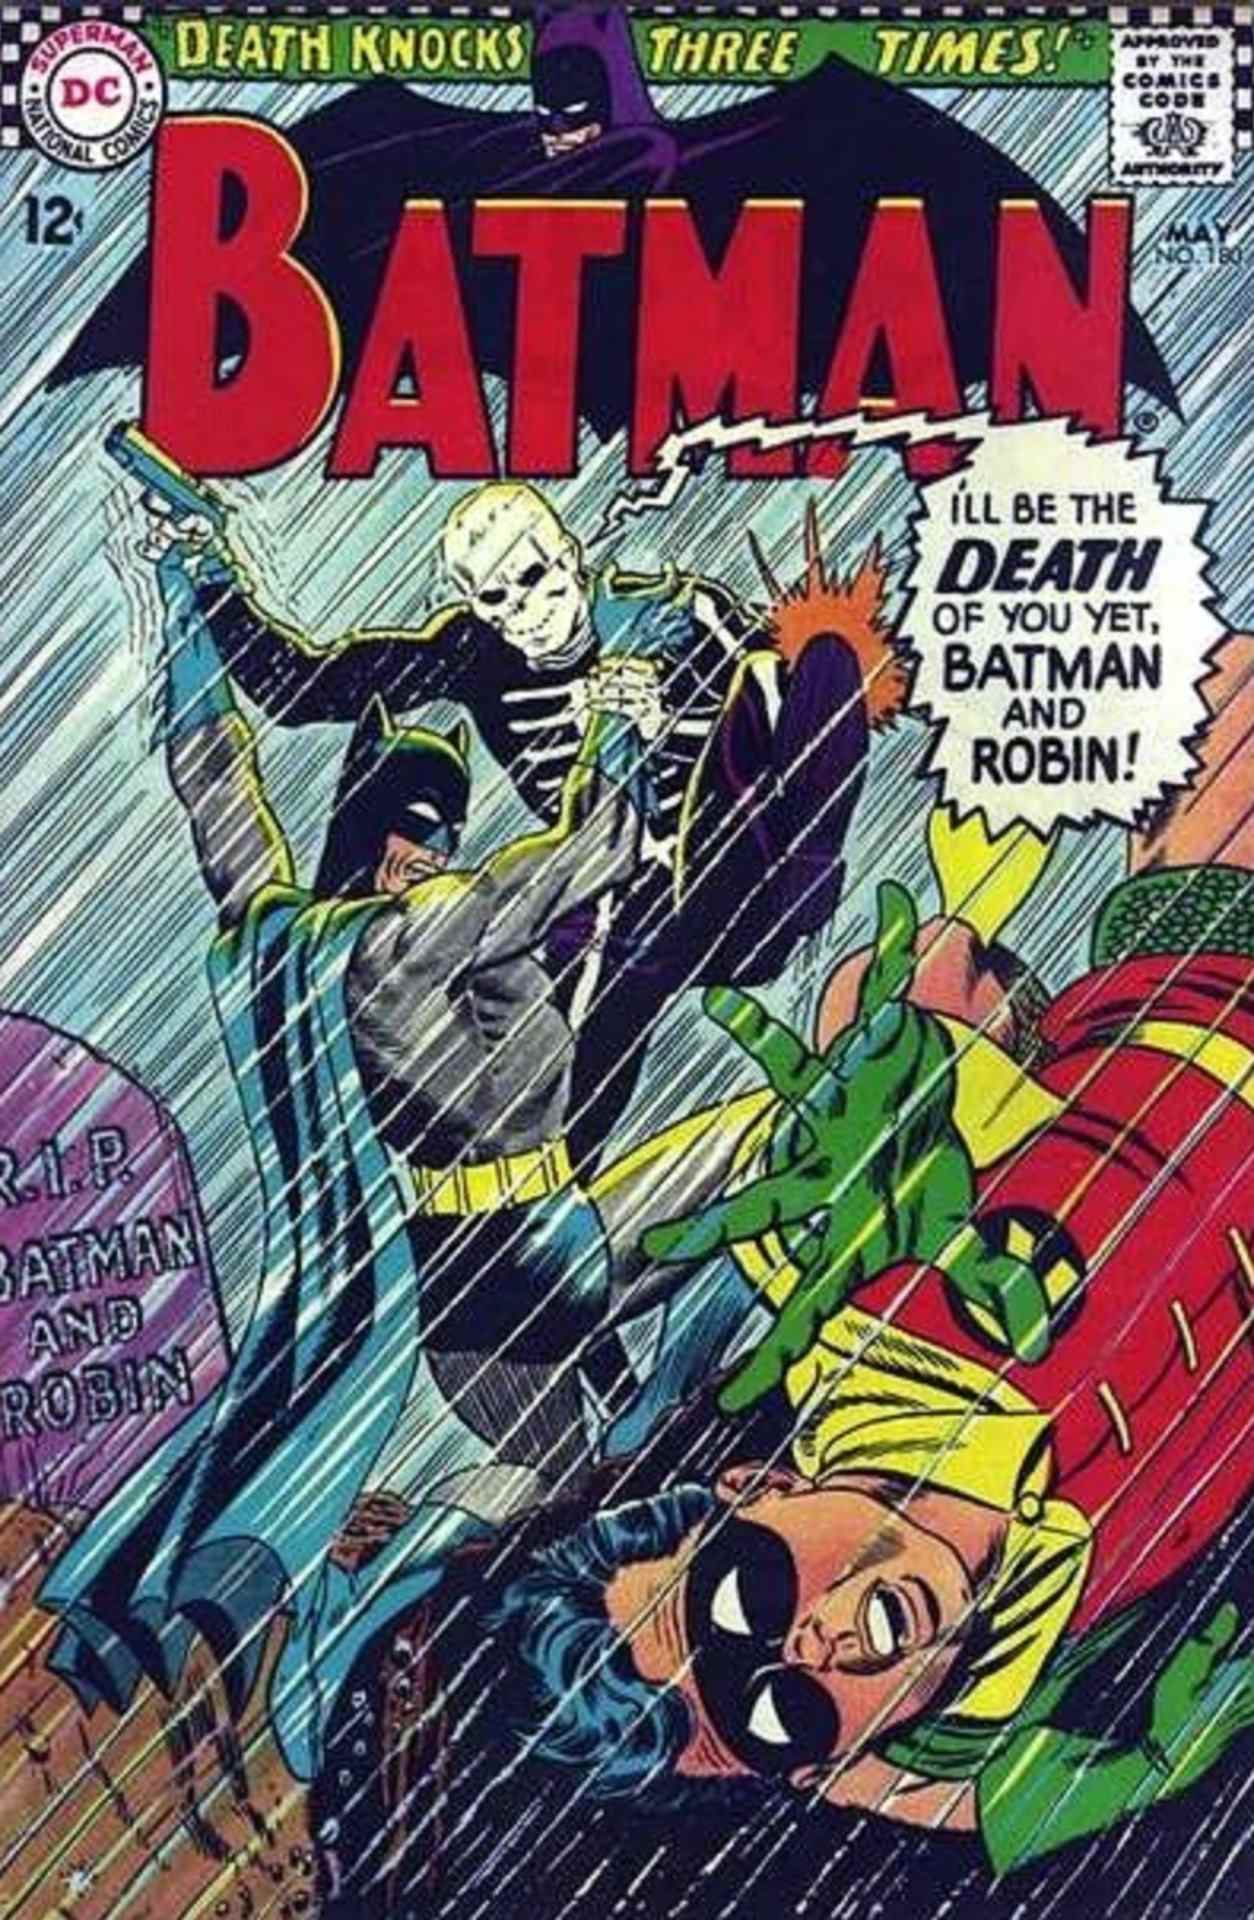 L'homme de la mort dans Batman #180